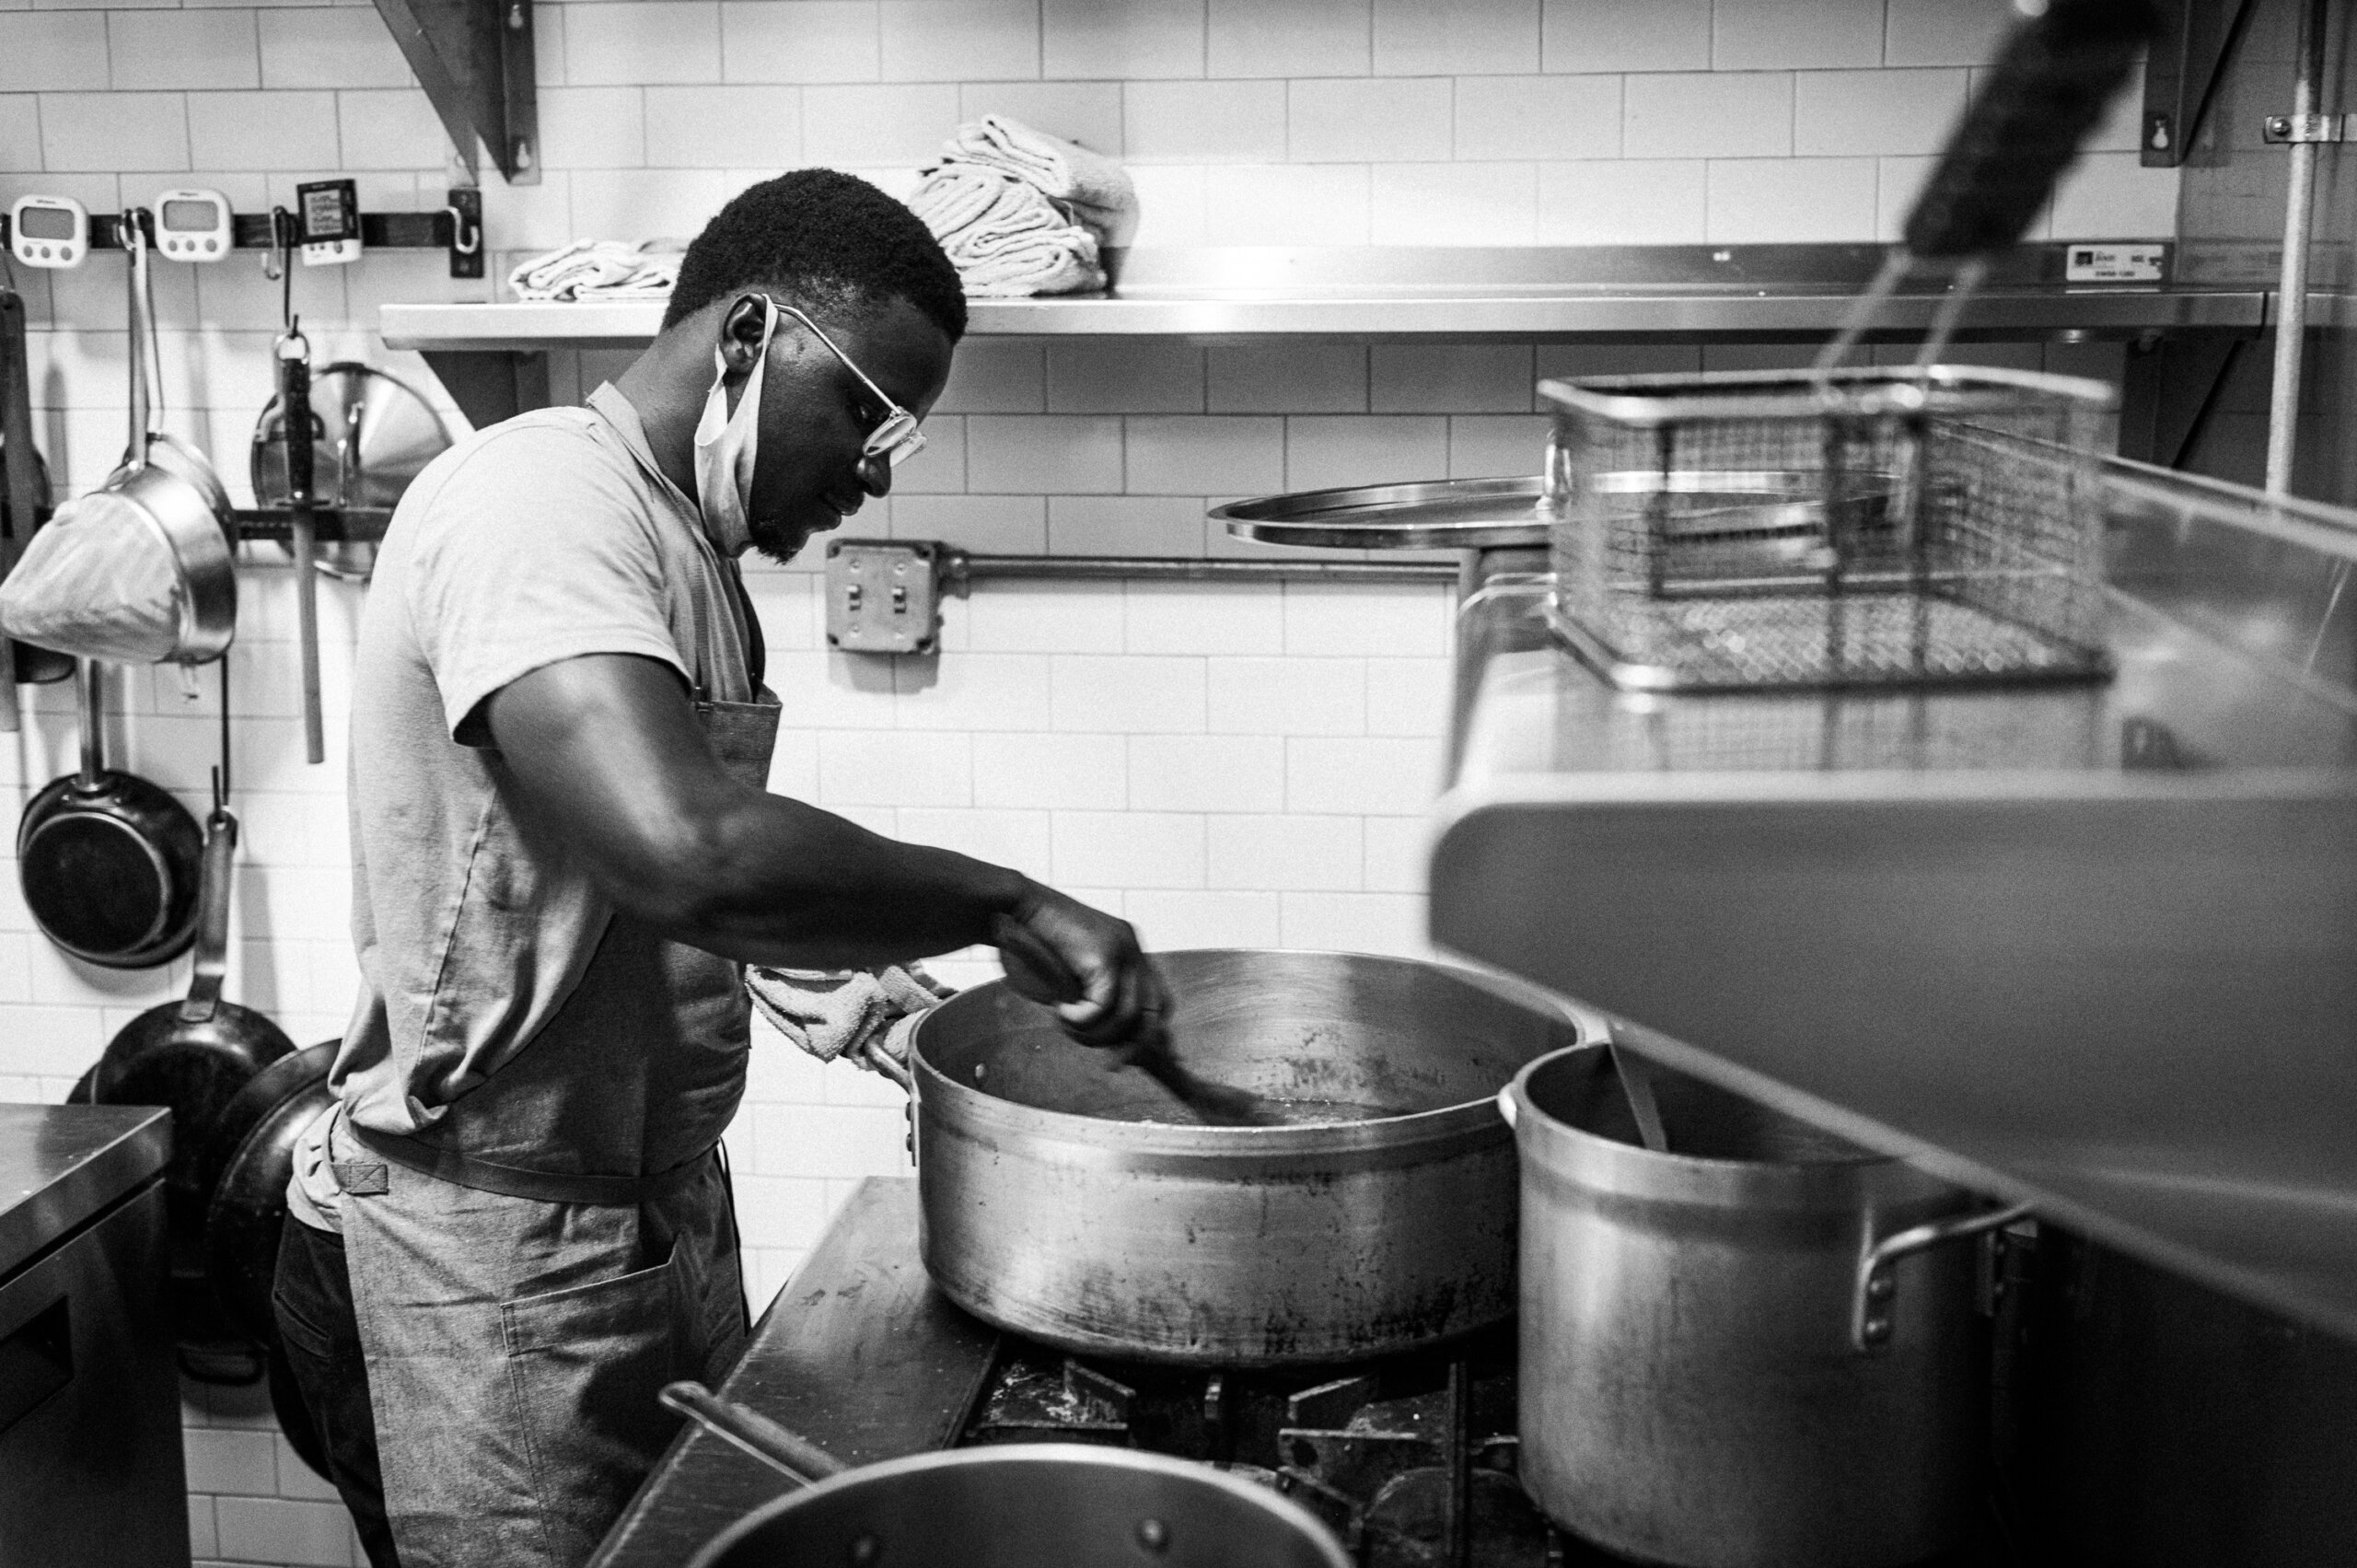 Chef Serigne Mbaye stirs a pot